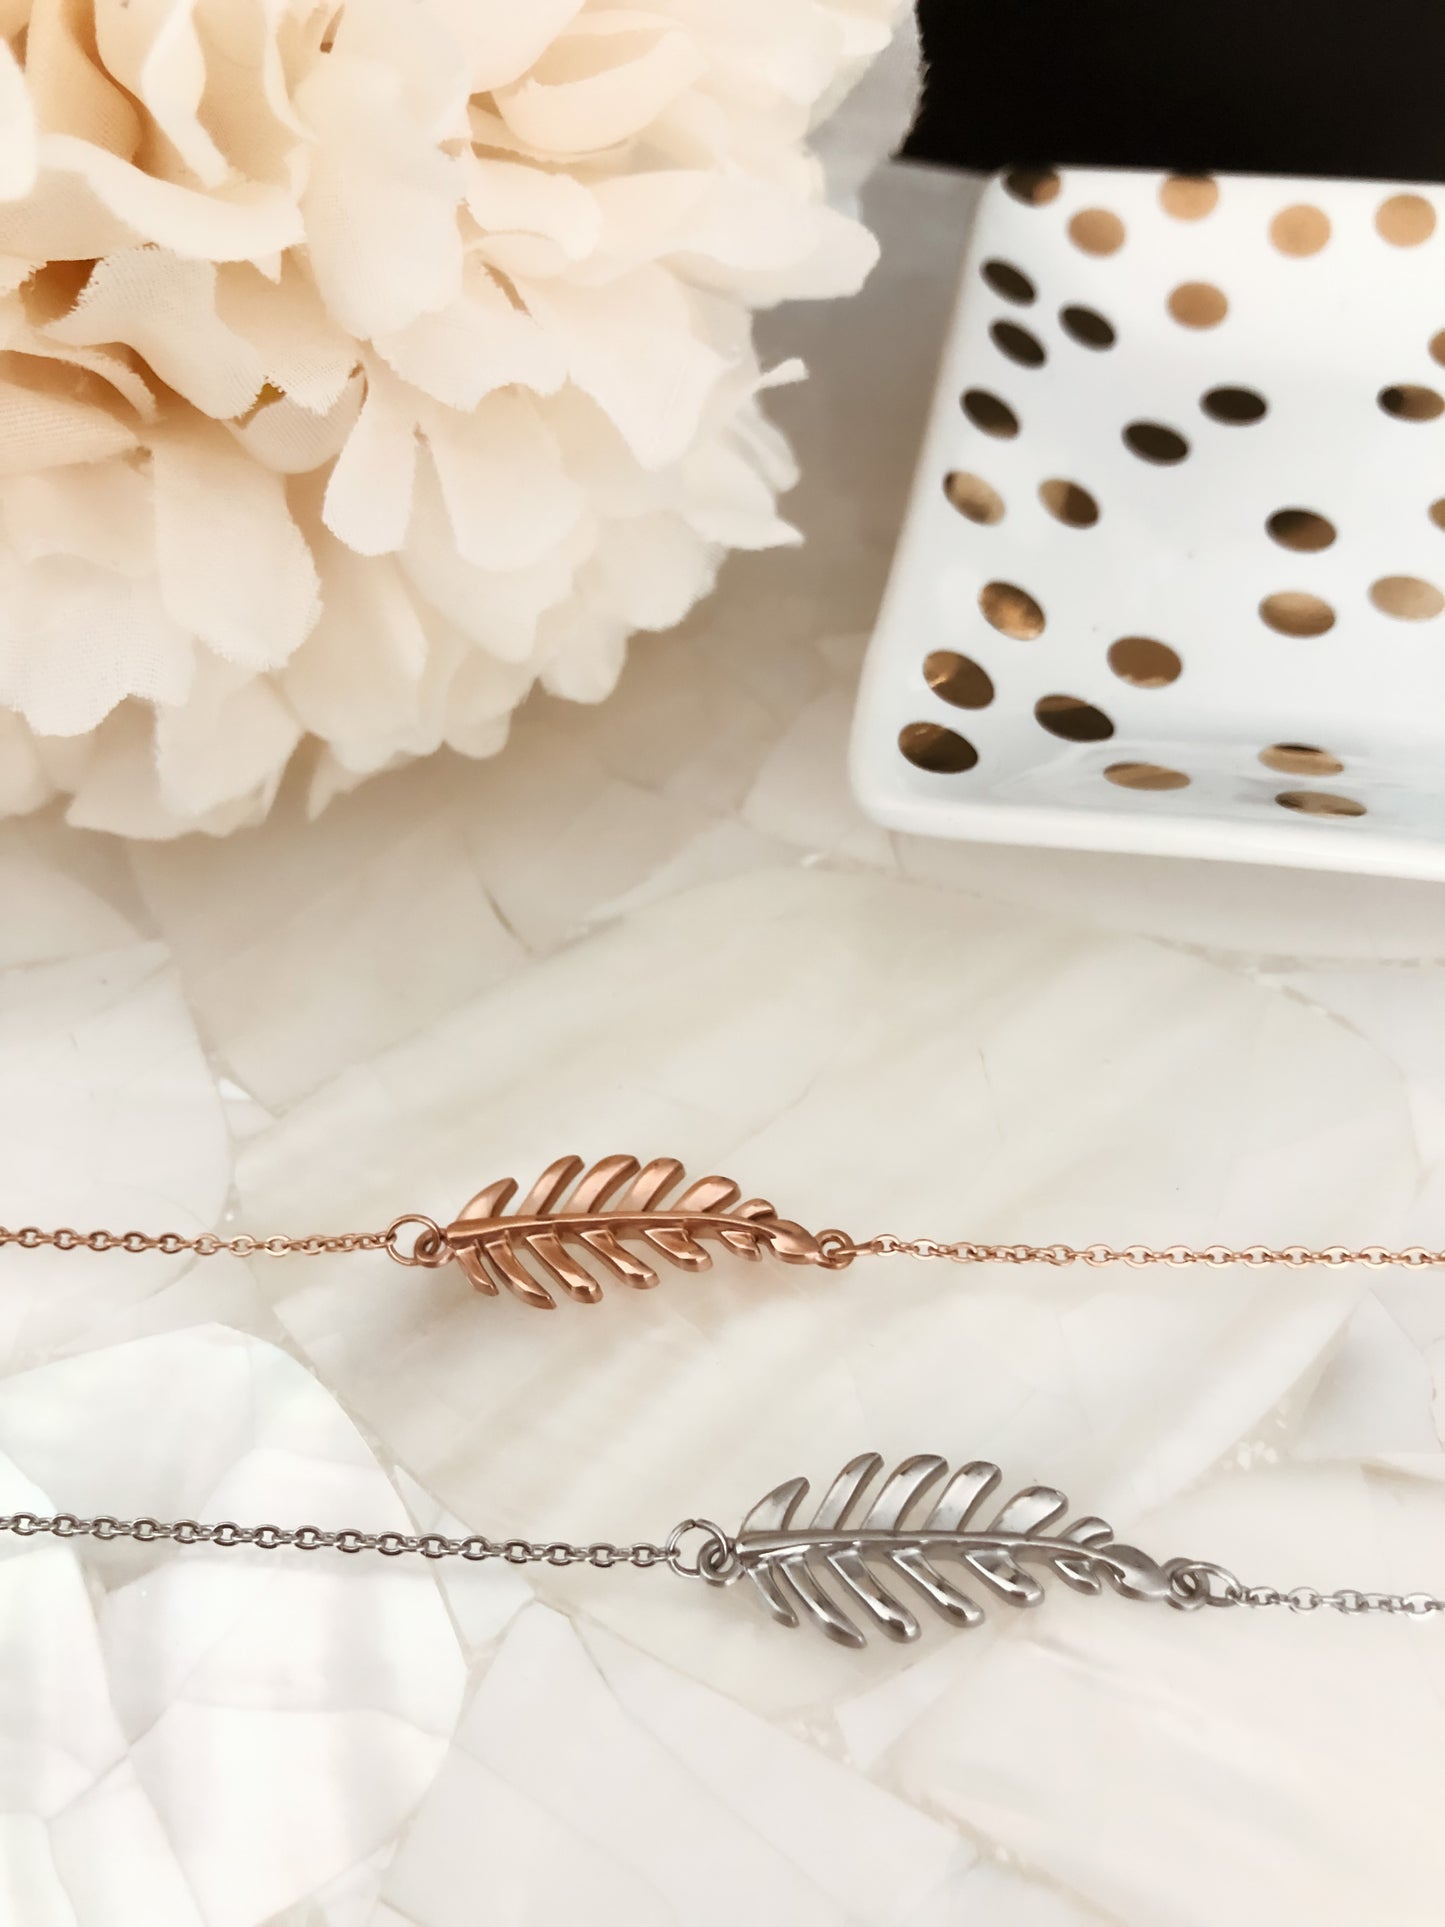 Goddess Collection - Silver Laurel Leaf Necklace